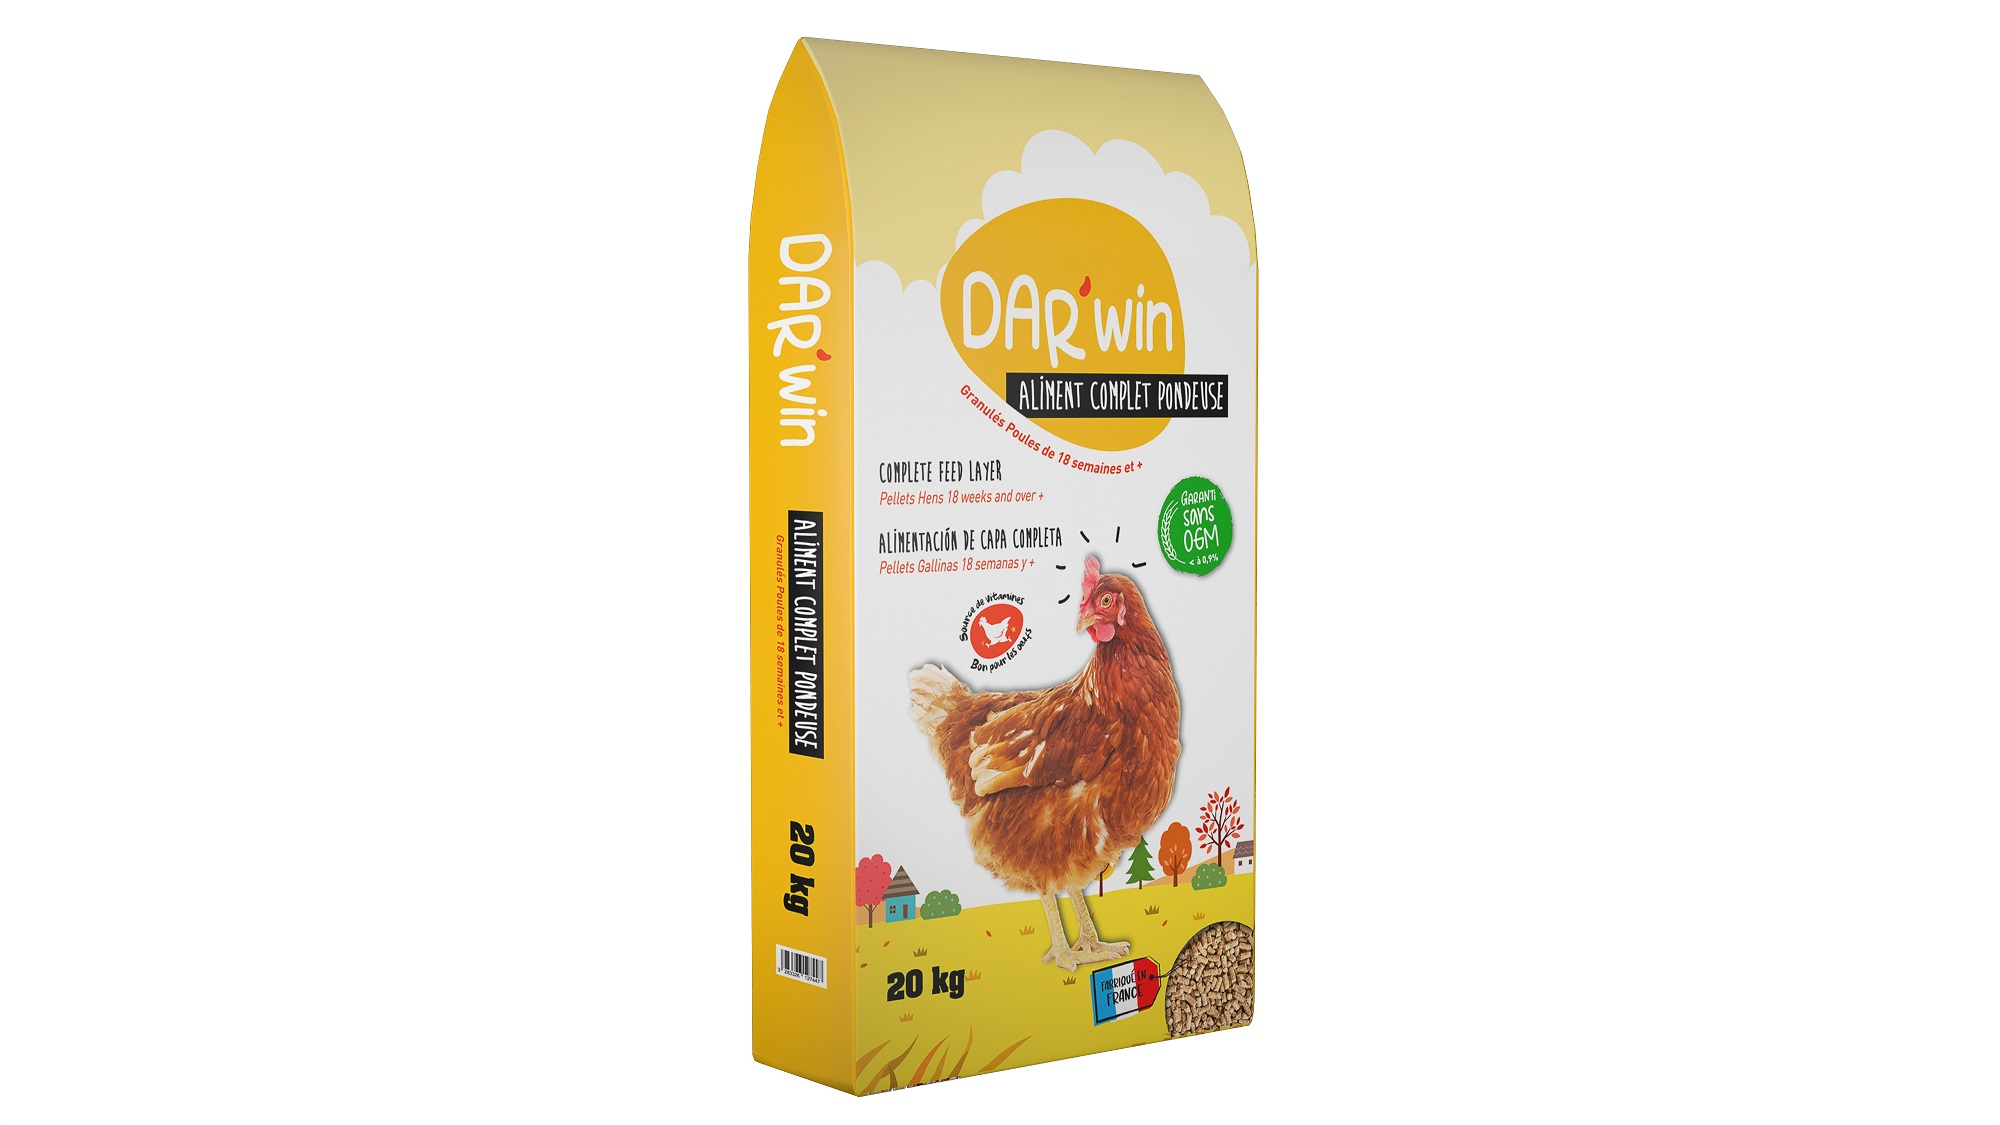 DAR'WIN Alimento completo para gallinas sin OGM